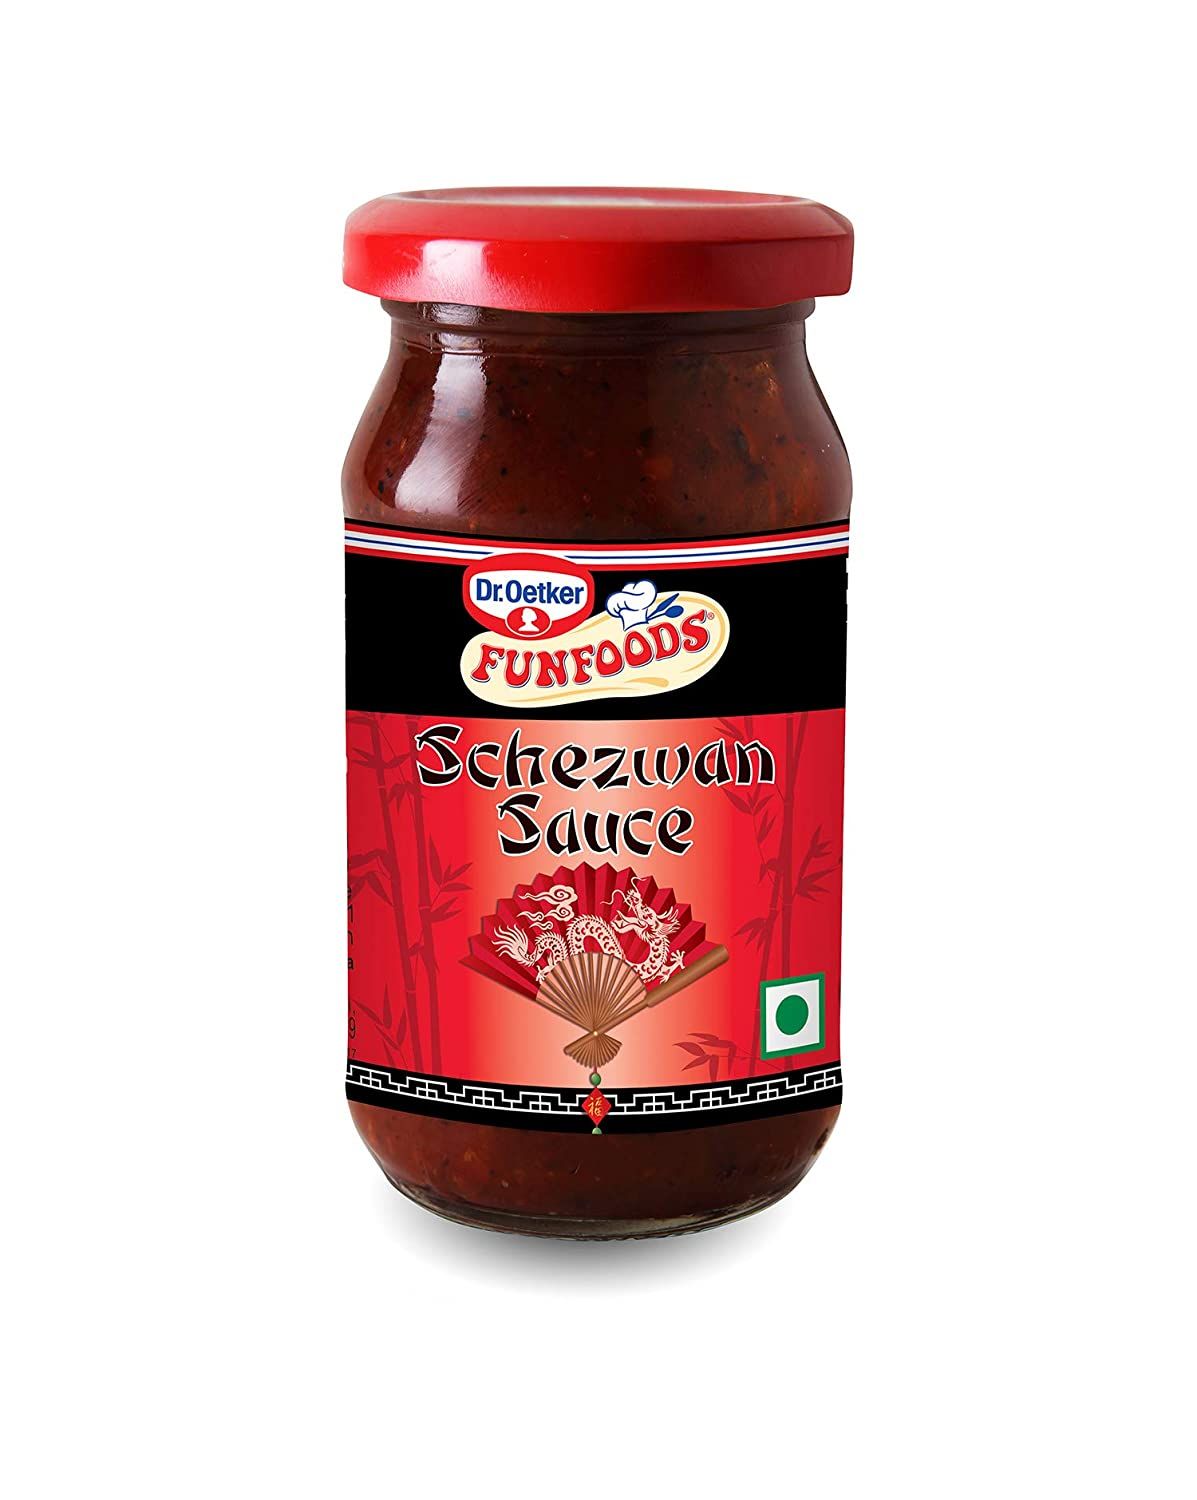 Dr Oetker Schezwan Sauce Image